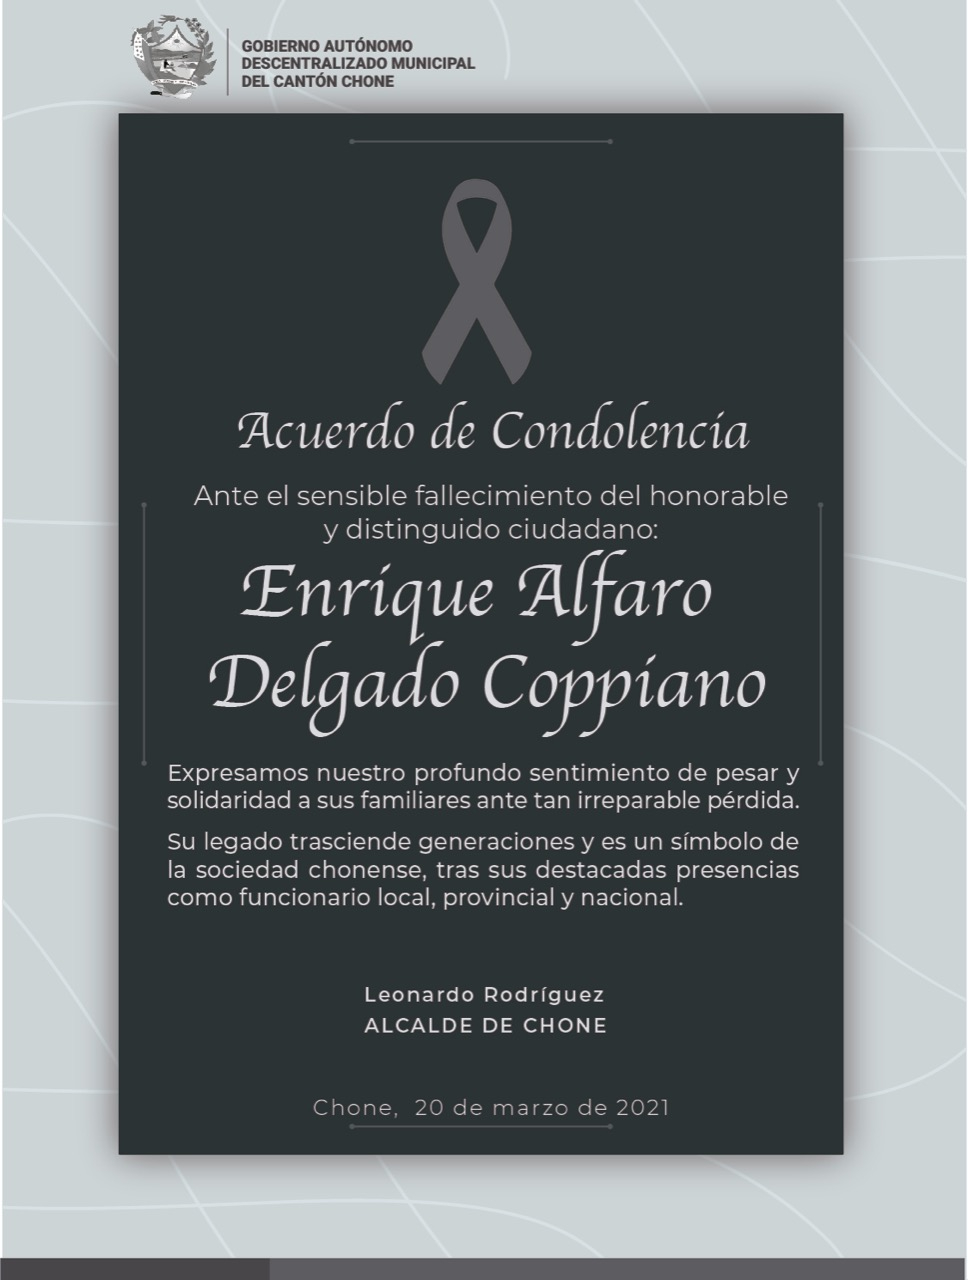 Nos solidarizamos con la familia de Enrique Alfaro Delgado Coppiano, ante su sensible fallecimiento. Dejando un gran legado en la sociedad chonense por su trabajo y compromiso en beneficio del cantón.